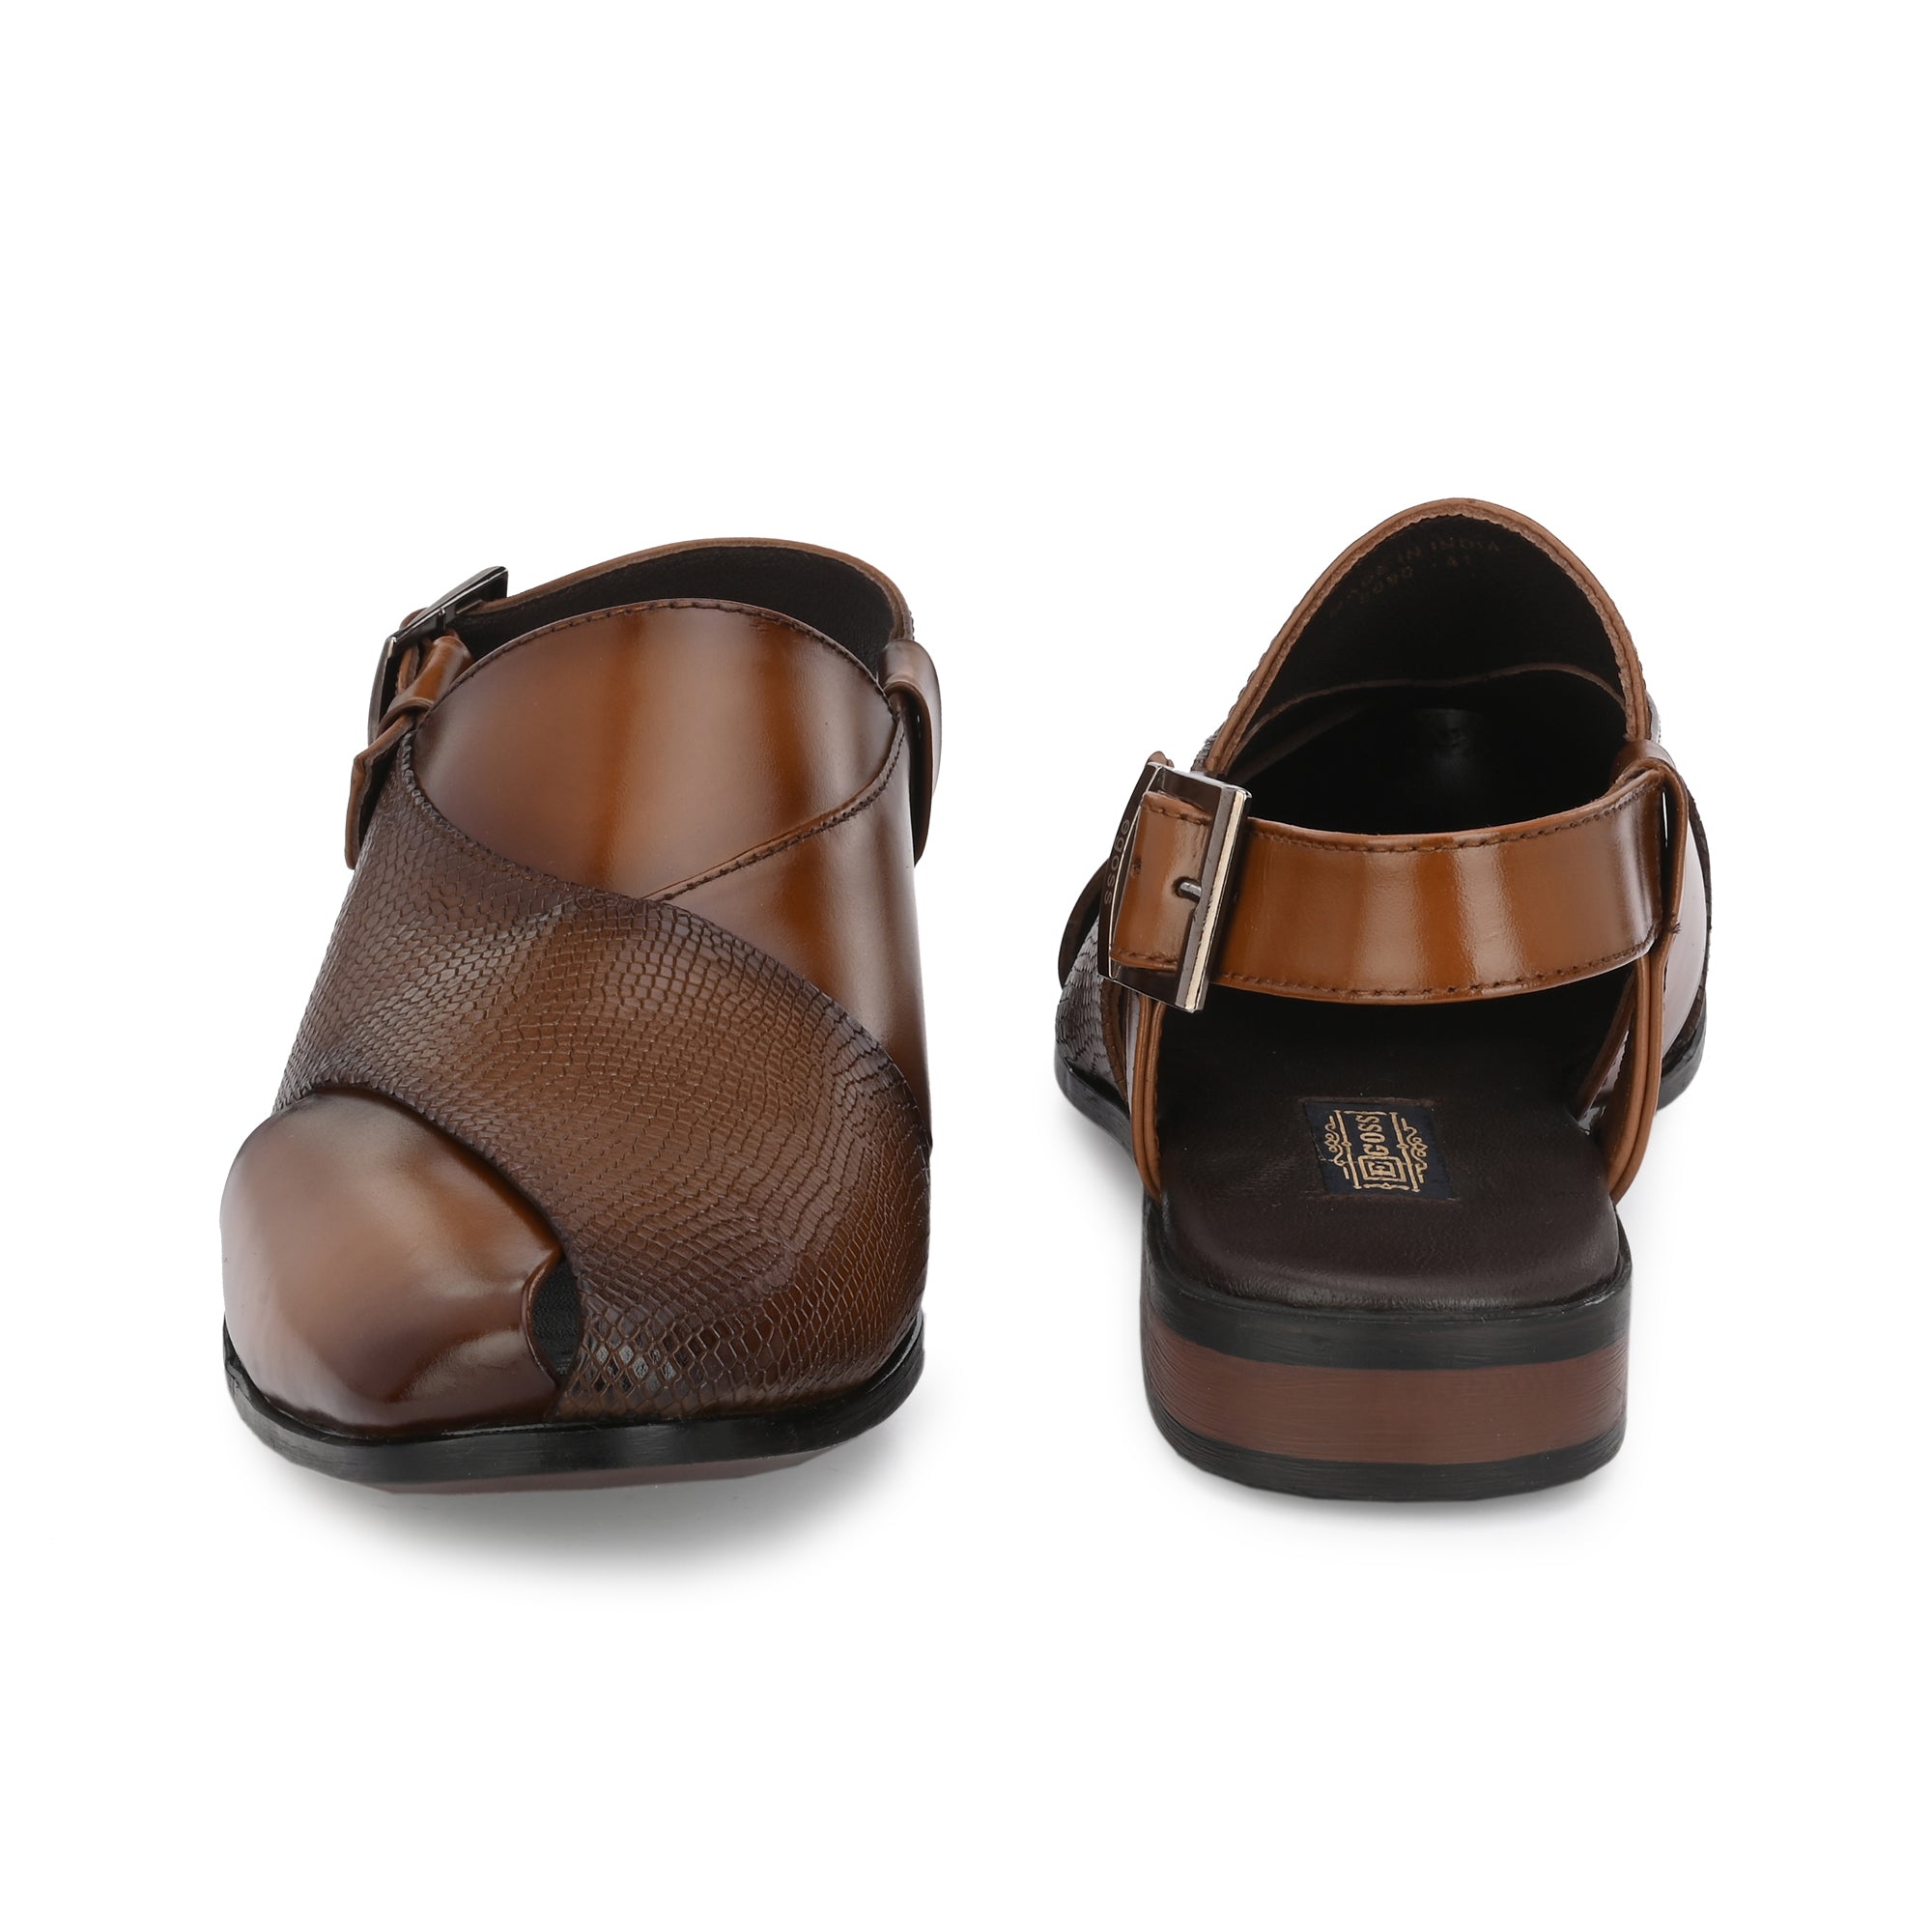 Buy KRS Peshawari Sandals in Brown INDUK 9 at Amazonin